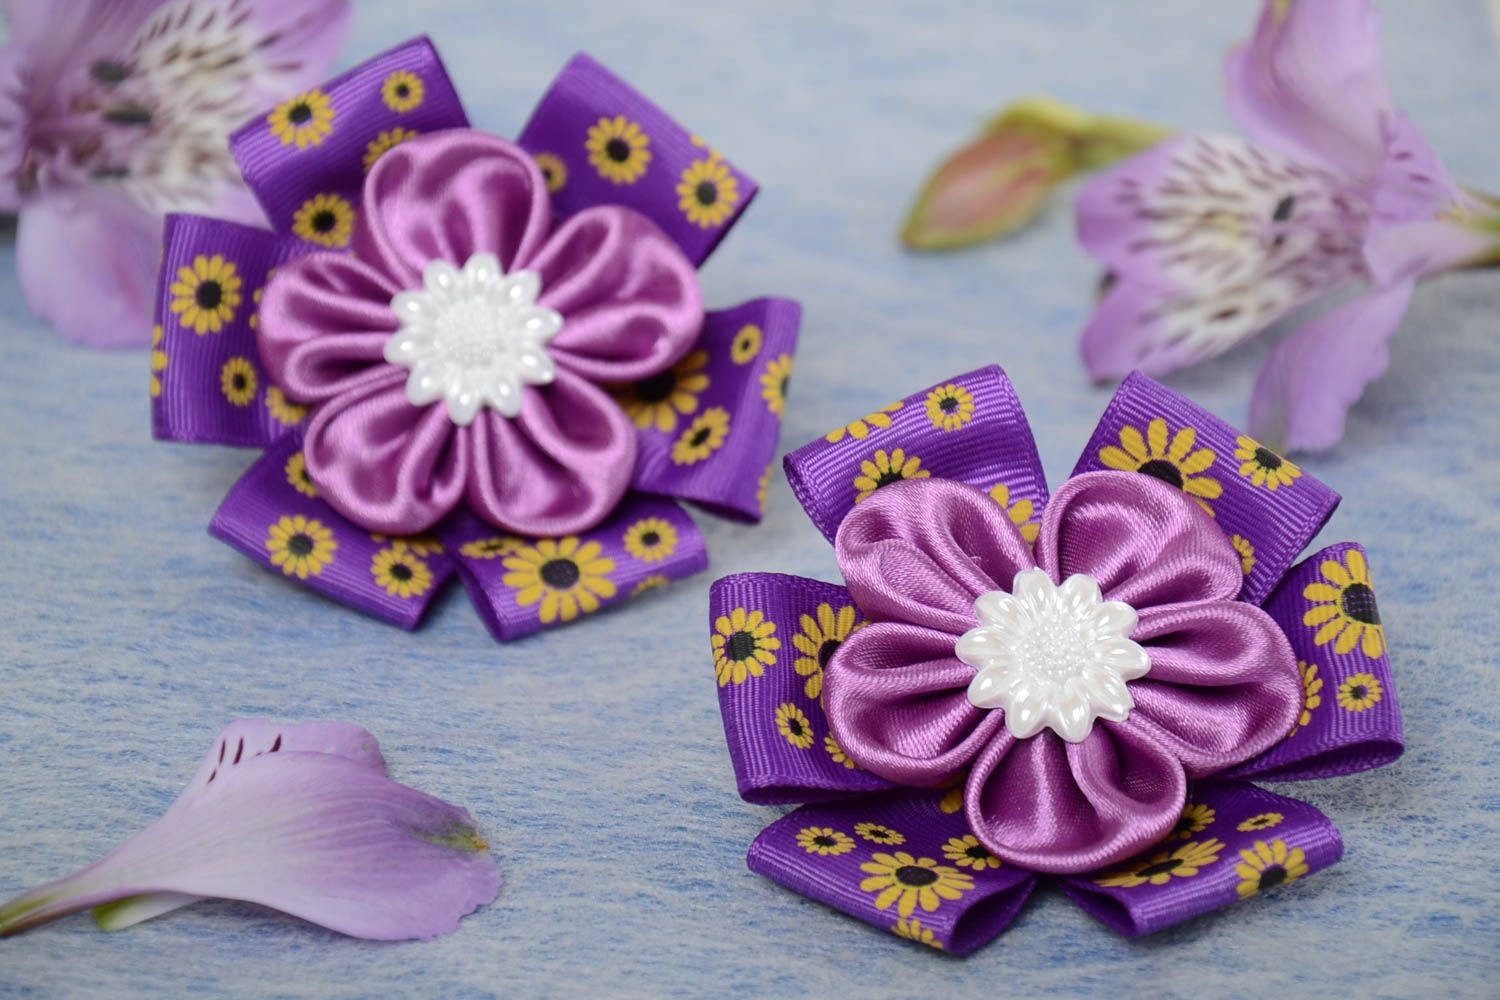 Резинки для волос из атласных лент цветки канзаши фиолетовые хэнд мэйд 2 штуки фото 1